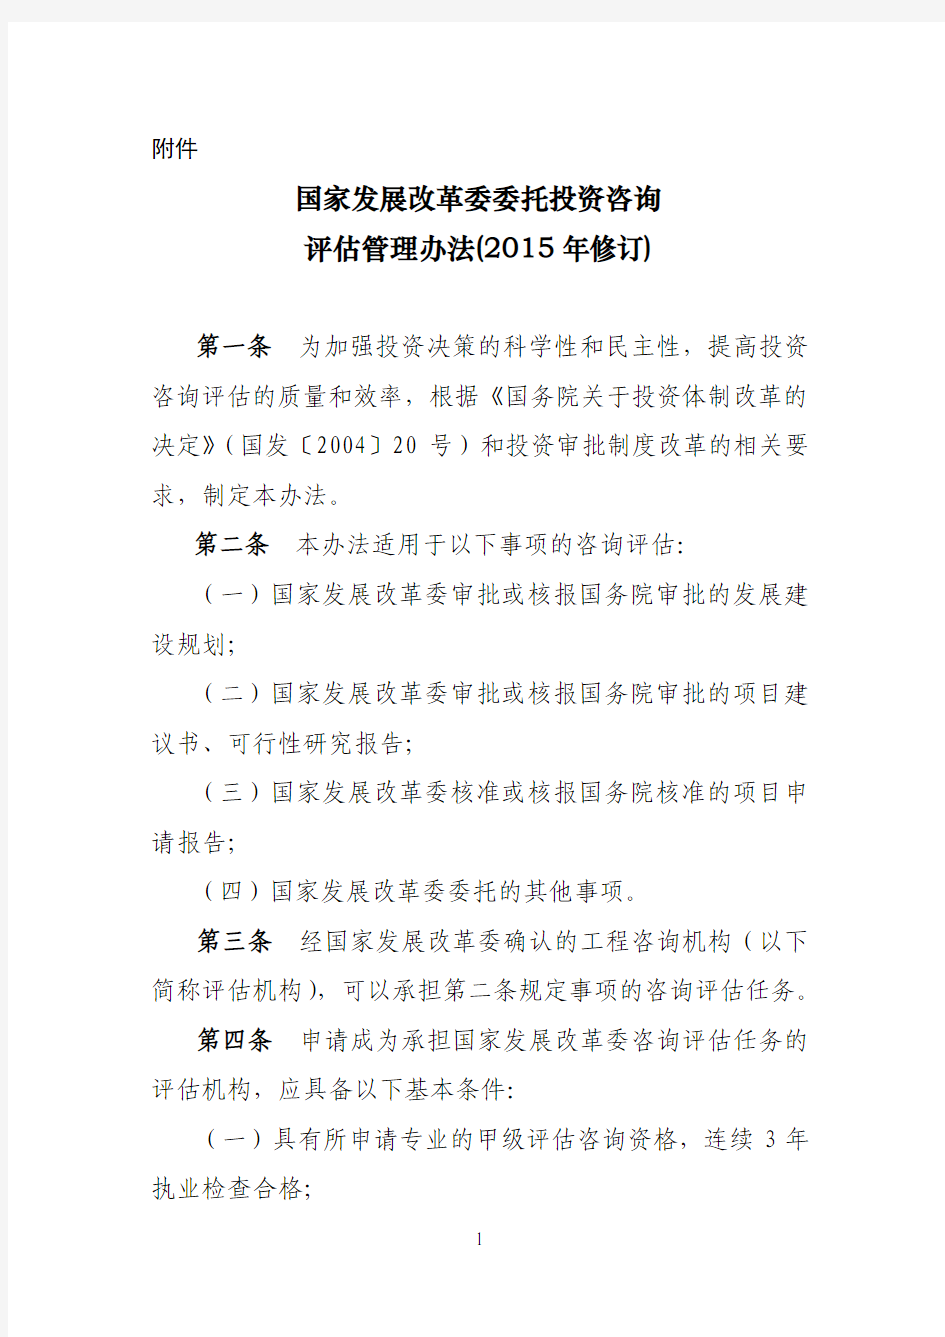 《国家发展改革委委托投资咨询评估管理办法(2015年修订)》--中国市场经济研究院